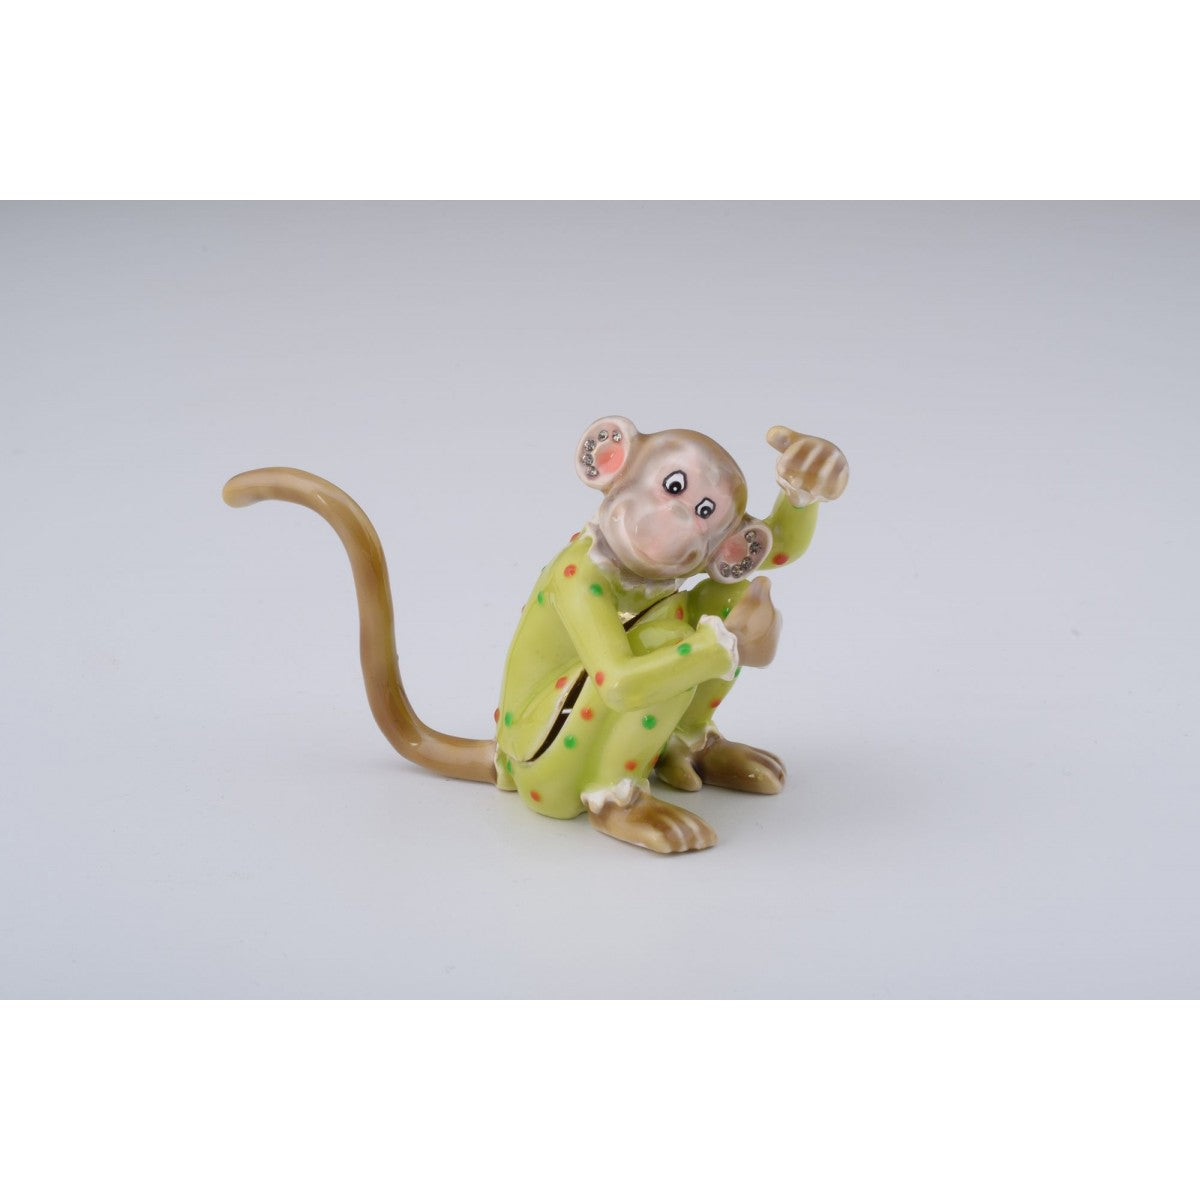 Chinese Zodiac Monkey Trinket Box by Keren Kopal